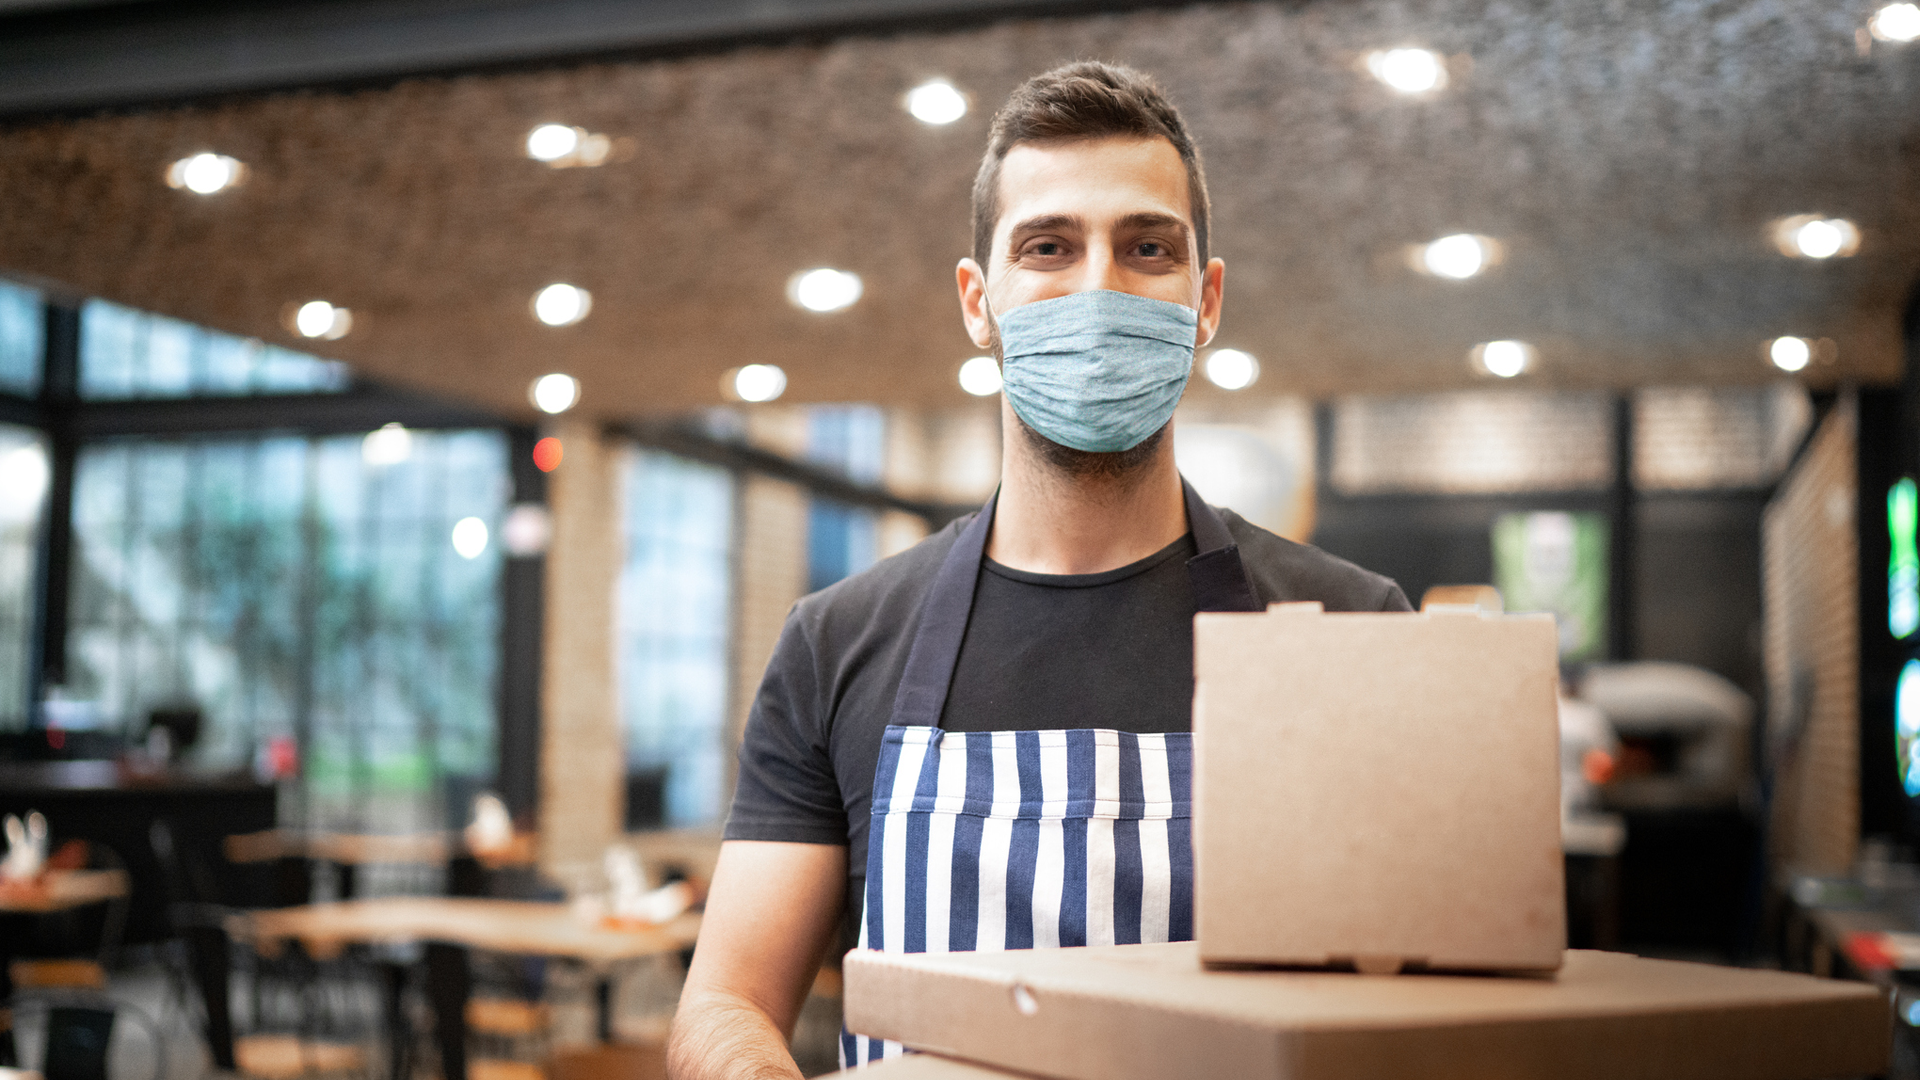 homem em restaurante, usando máscara e avental, posa em frente a uma sacola de delivery